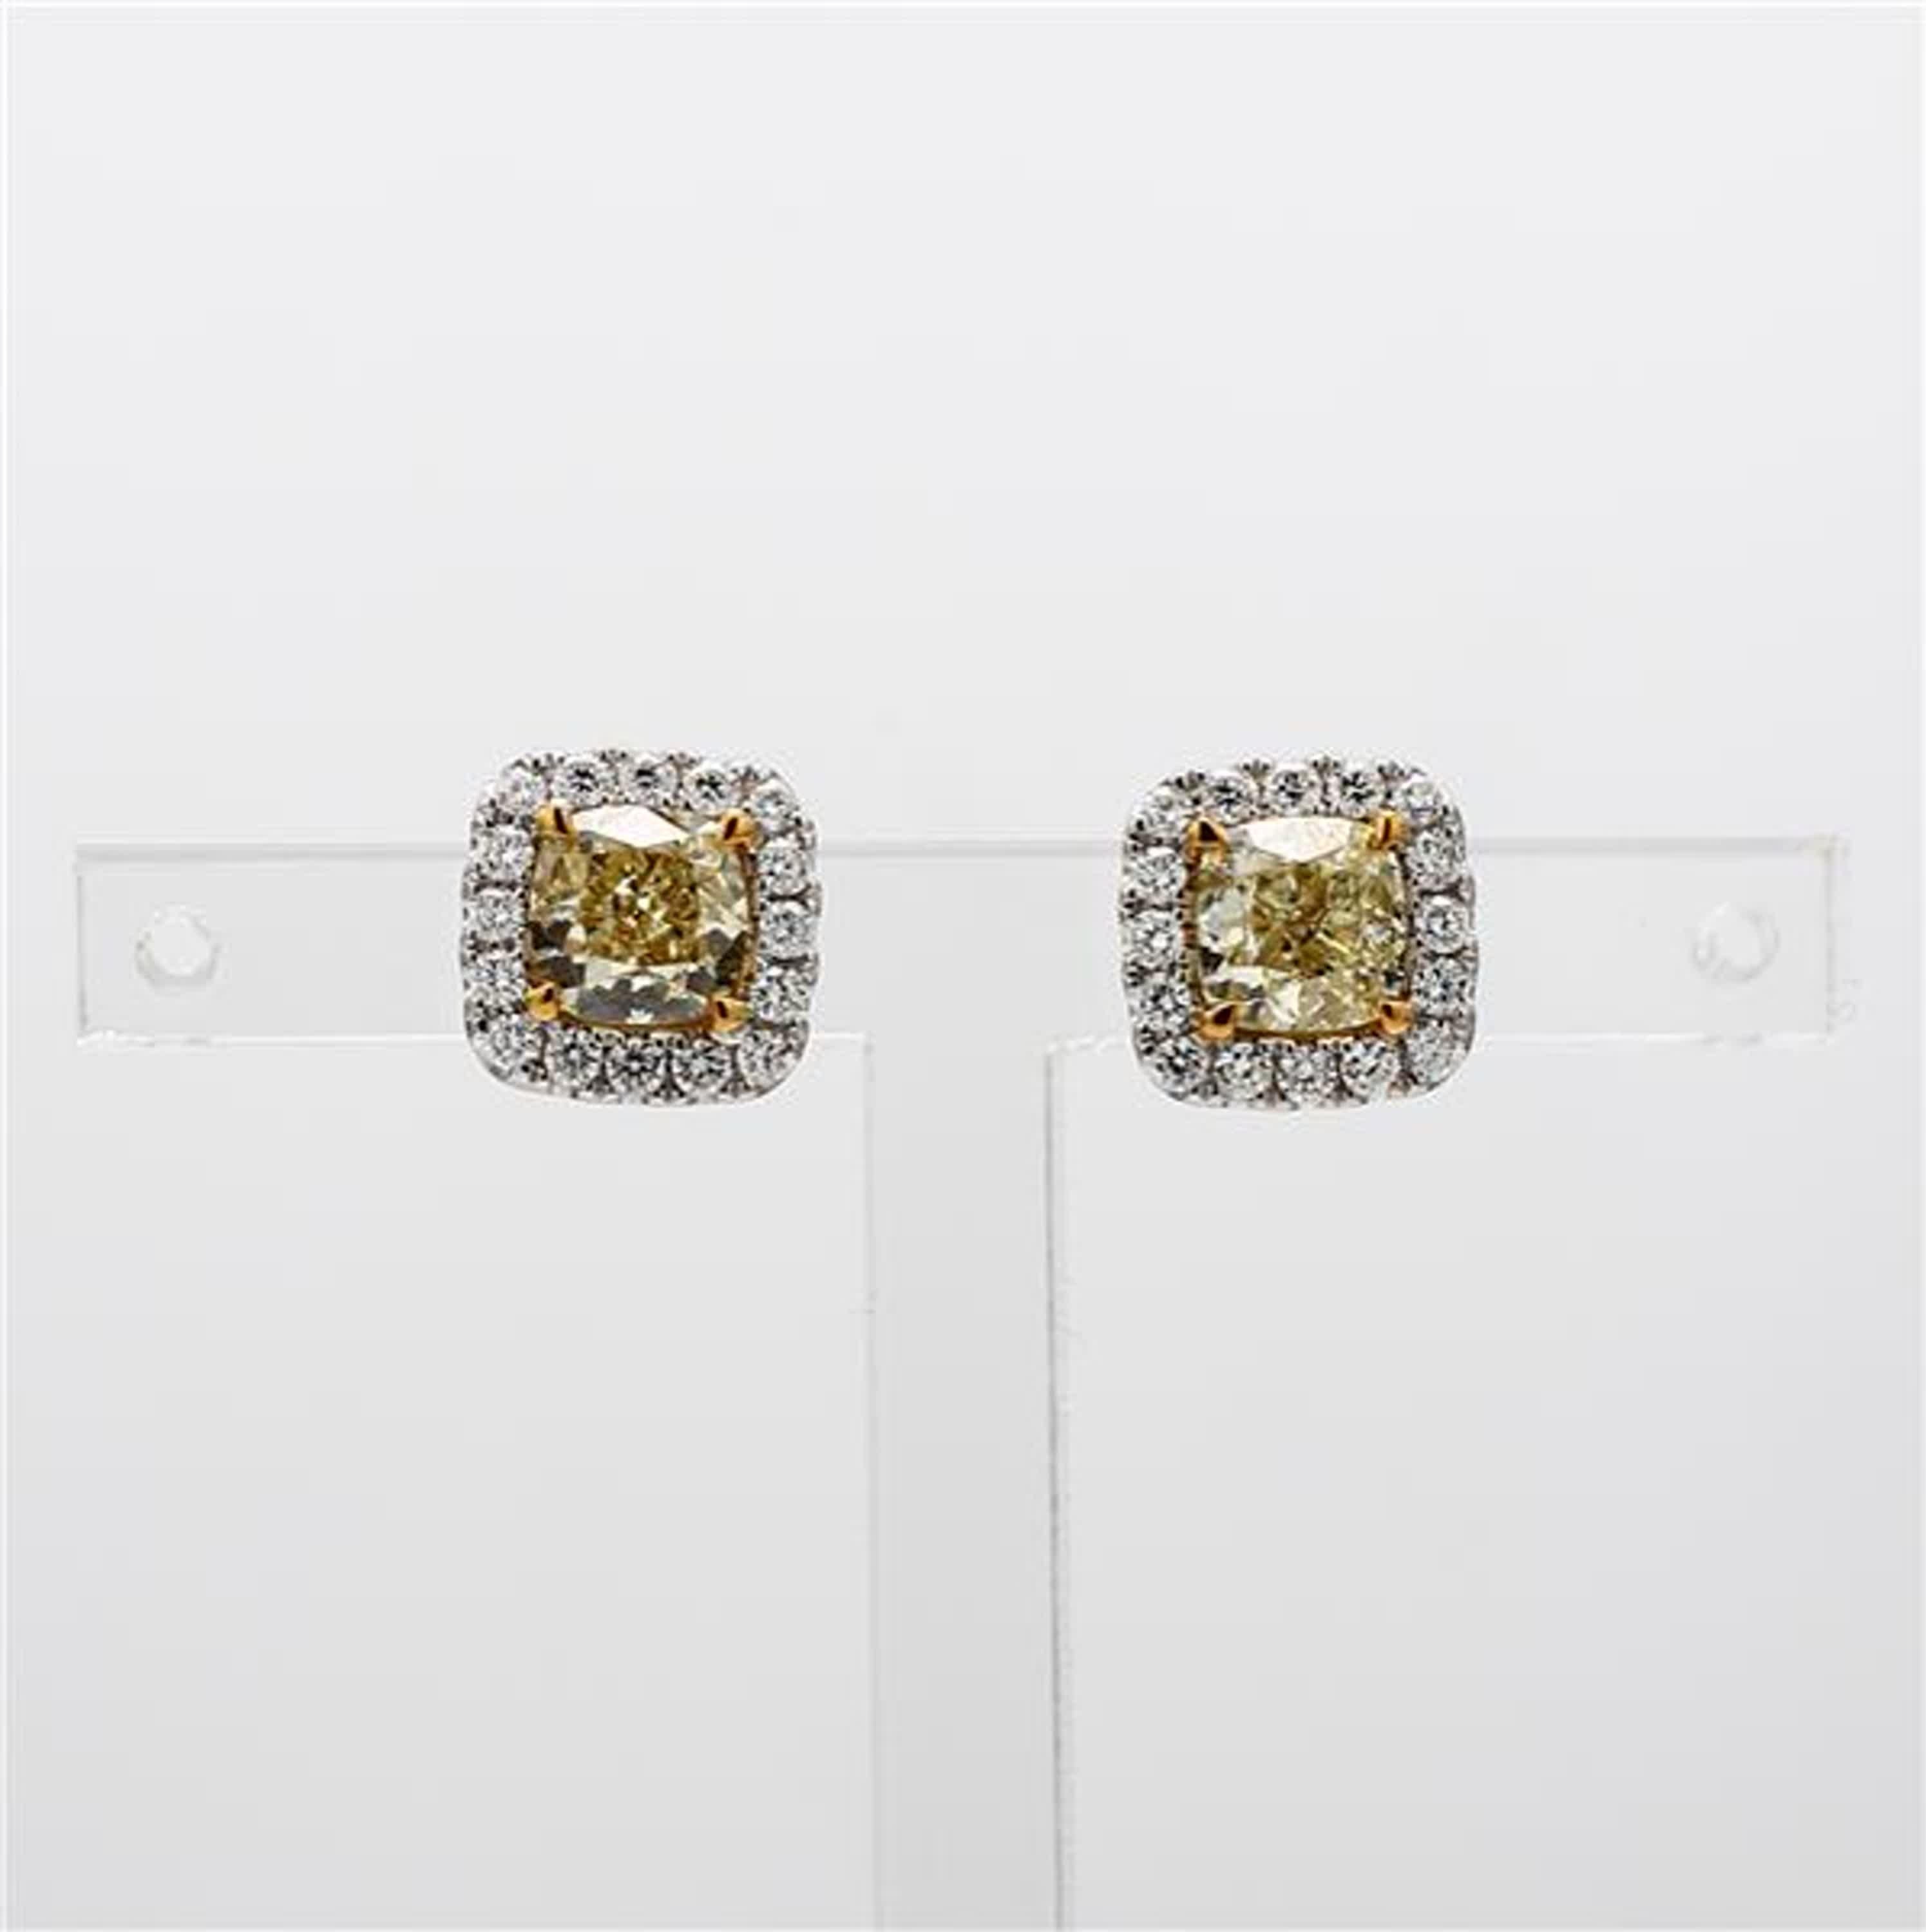 Die klassischen GIA-zertifizierten Diamantohrringe von RareGemWorld. Eingefasst in eine wunderschöne Fassung aus 18 Karat Gelb- und Weißgold mit gelben Diamanten im Kissenschliff. Die gelben Diamanten sind von runden weißen Naturdiamanten umgeben.